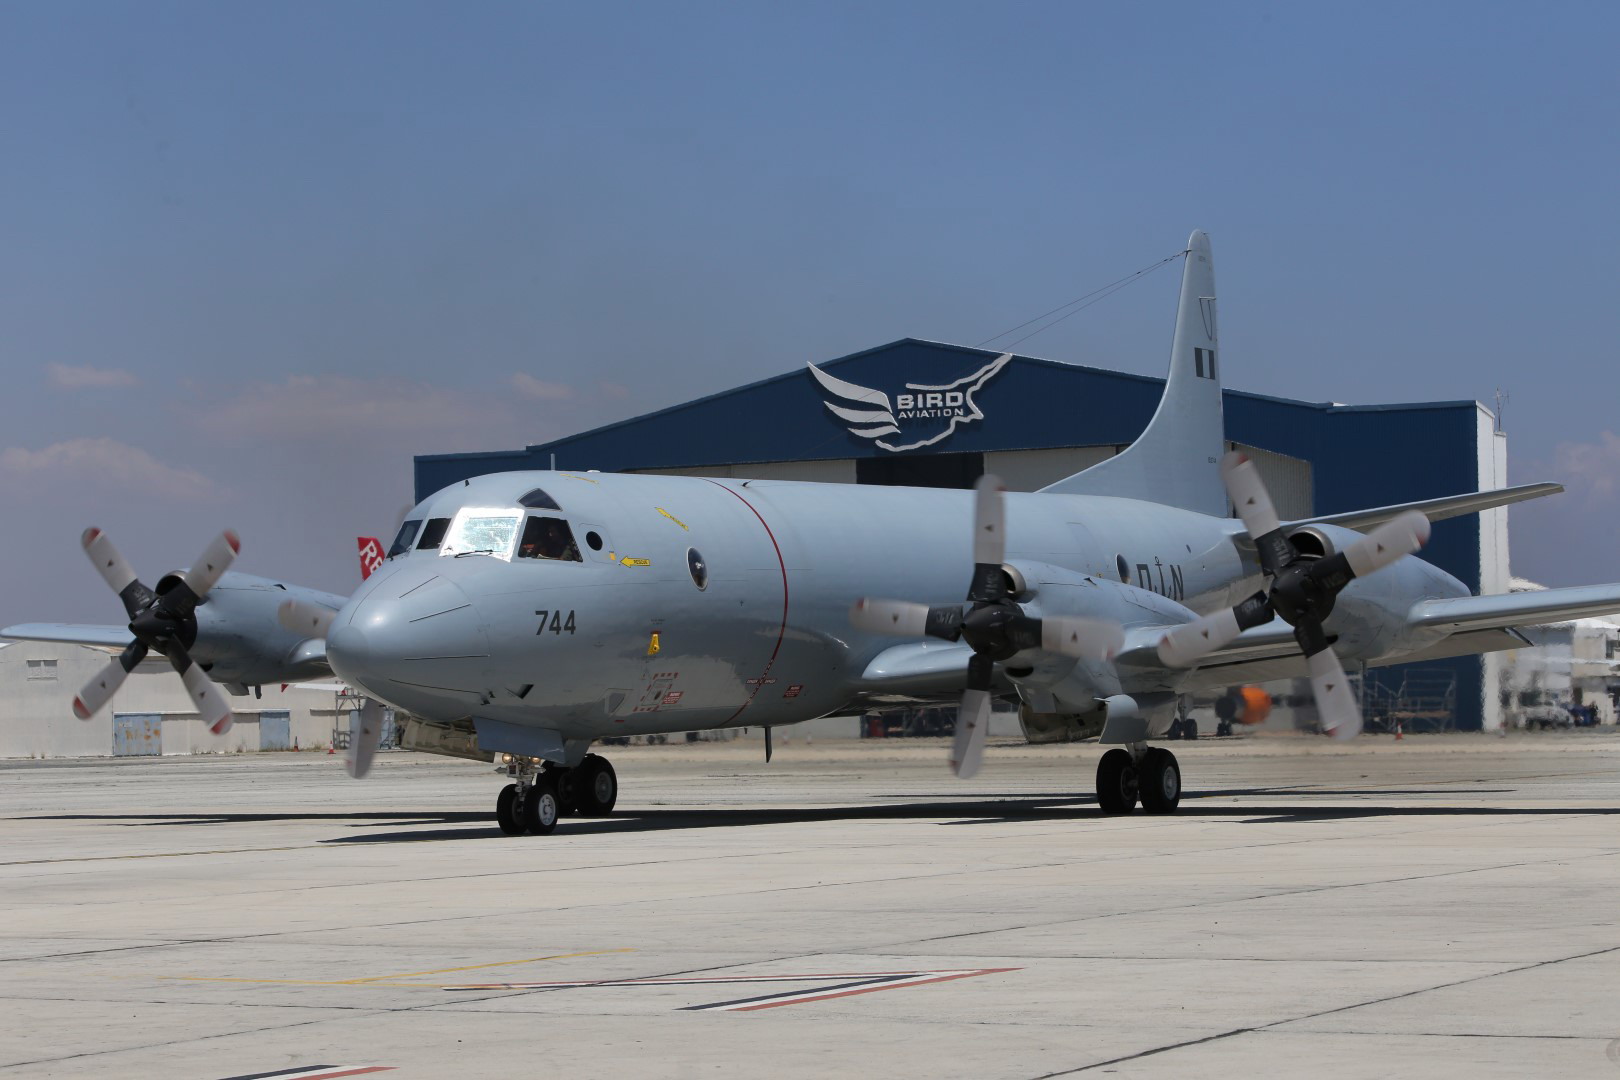 Στη μάχη επιτήρησης της Μεσογείου το αεροσκάφος Ναυτικών Επιχειρήσεων Ρ-3Β του ΠΝ